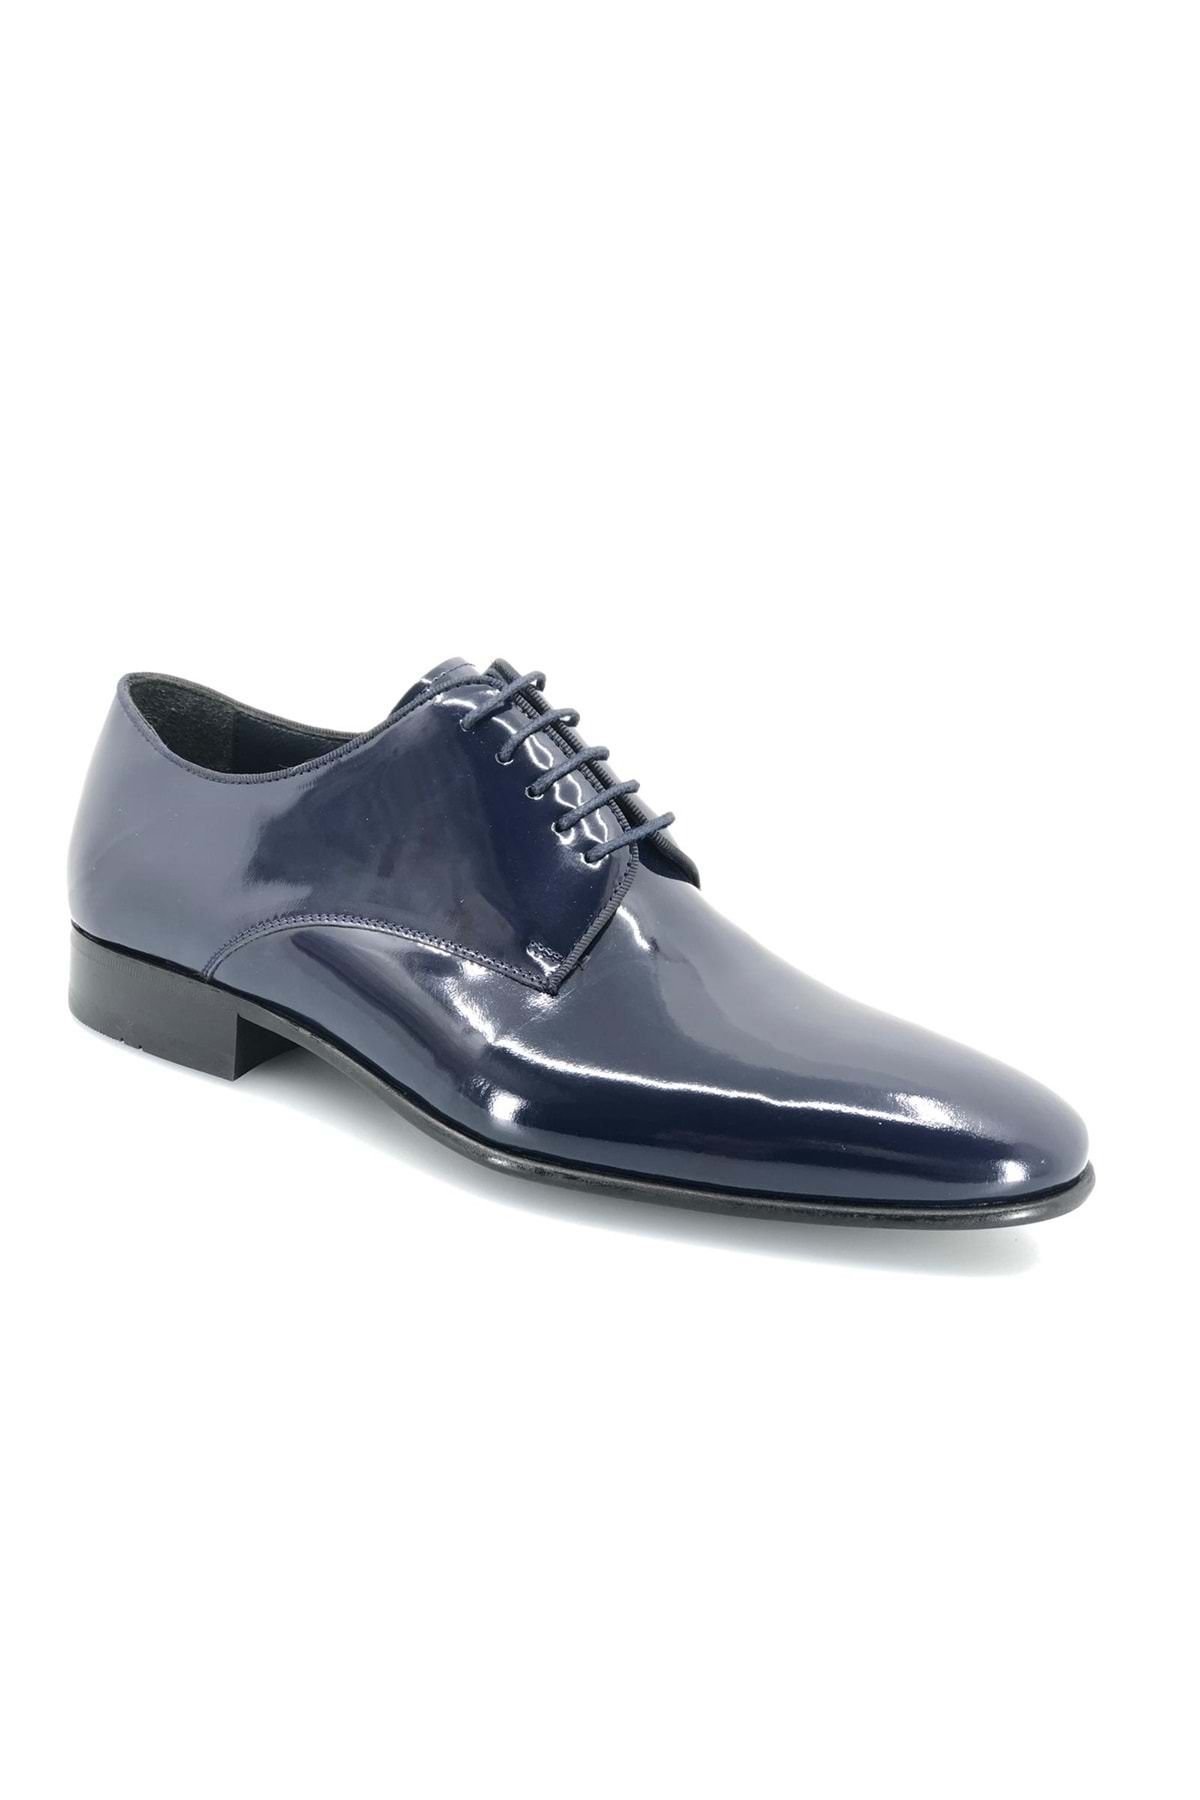 Kids Club Shoes Aronay 406 %100 Hakiki Deri Bağcıklı  Jurdan Kösele Erkek Klasik Ayakkabı LACİVERT